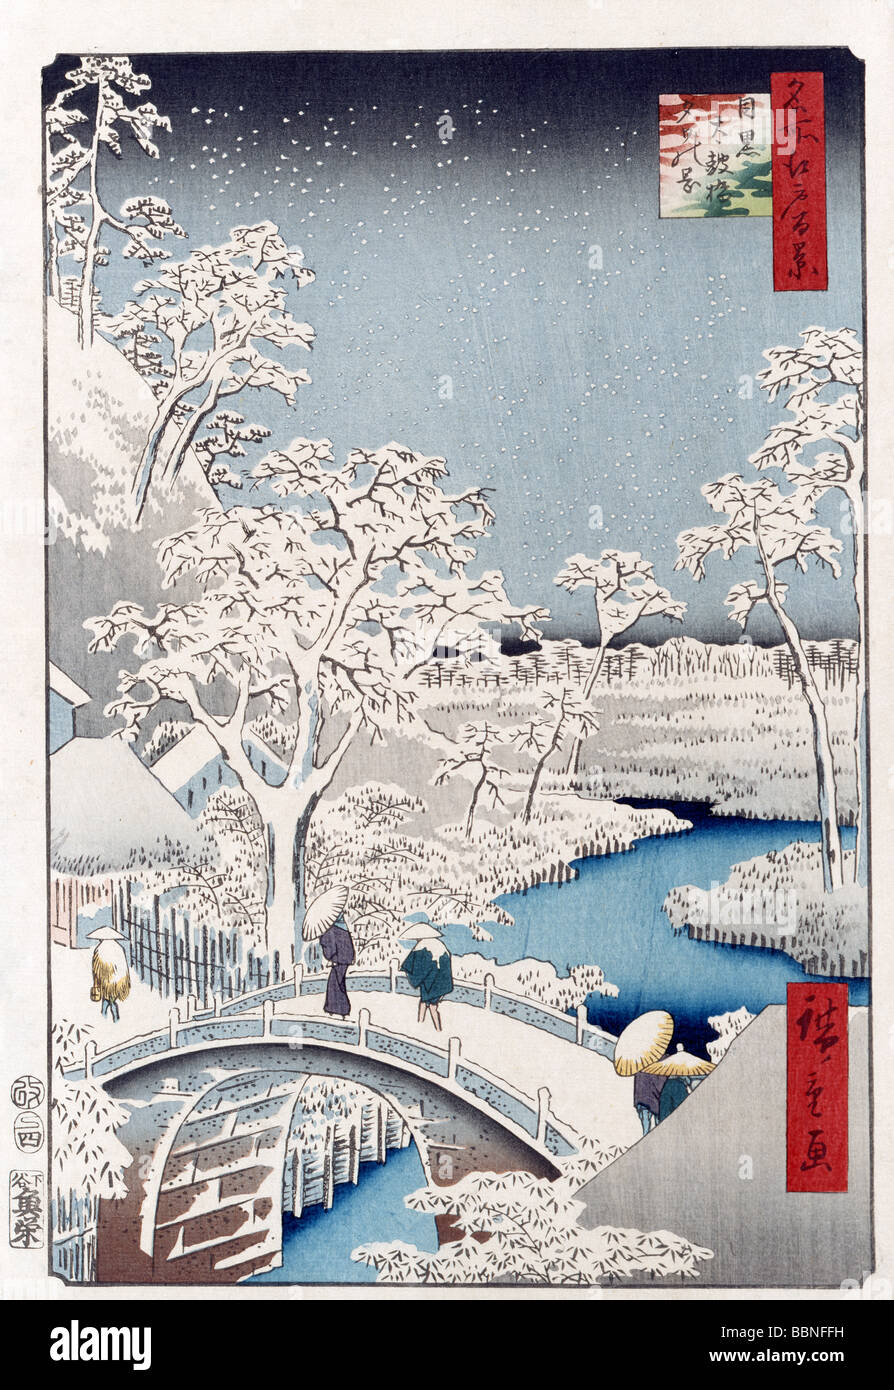 Utagawa Hiroshige, One Hundred Famous Views of Edo, The Drum Bridge at Yuhi Hill in Meguro, Meguro taikobashi yuhi no oka, Stock Photo